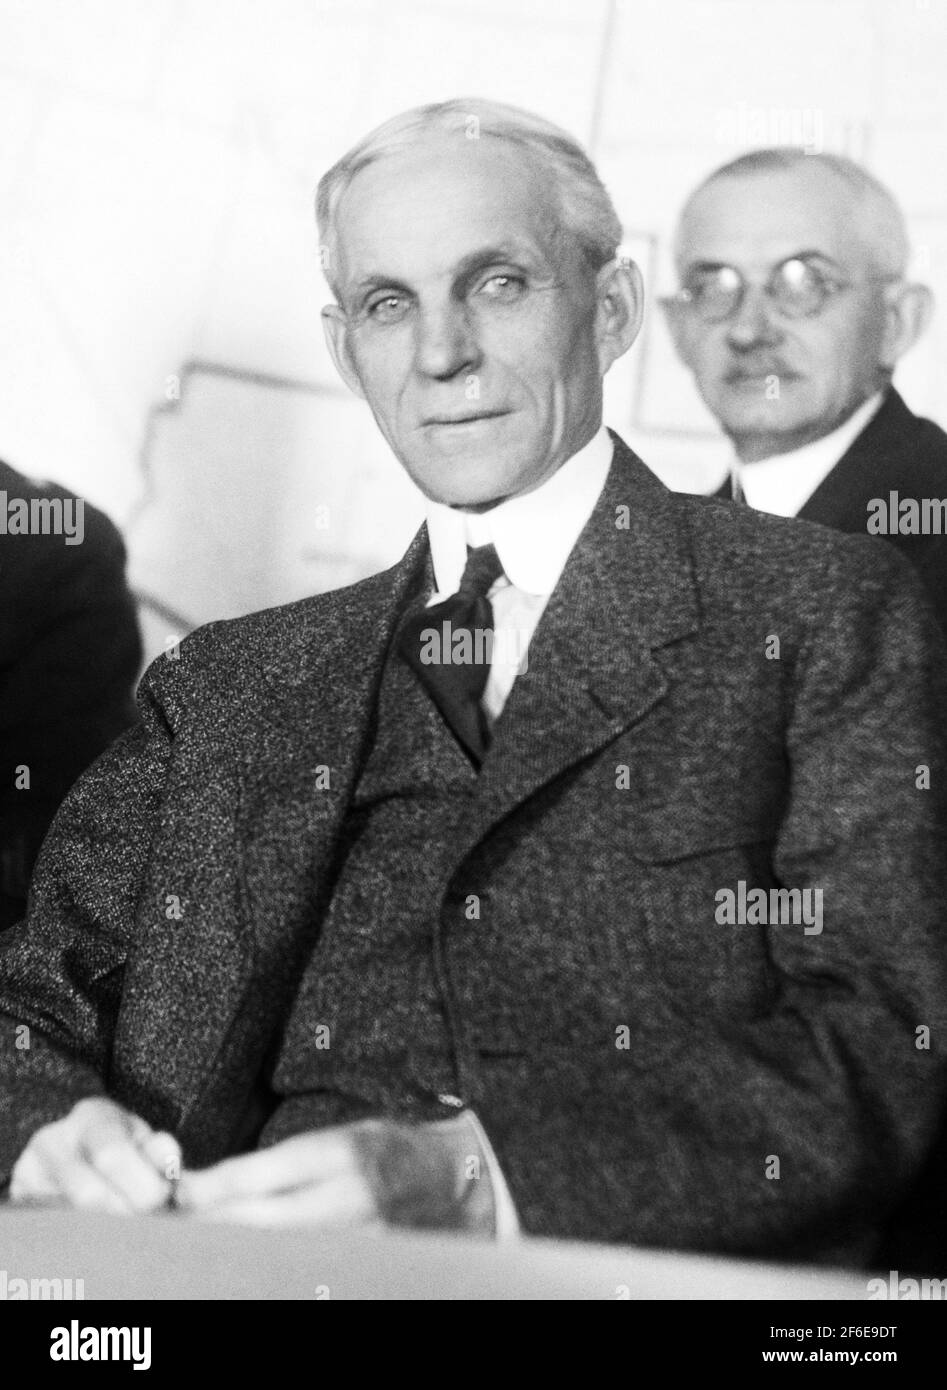 Photo d'époque de l'industriel américain et magnat des affaires Henry Ford (1863 – 1947) – fondateur de la Ford Motor Company. Photo de Harris & Ewing prise en 1922. Banque D'Images